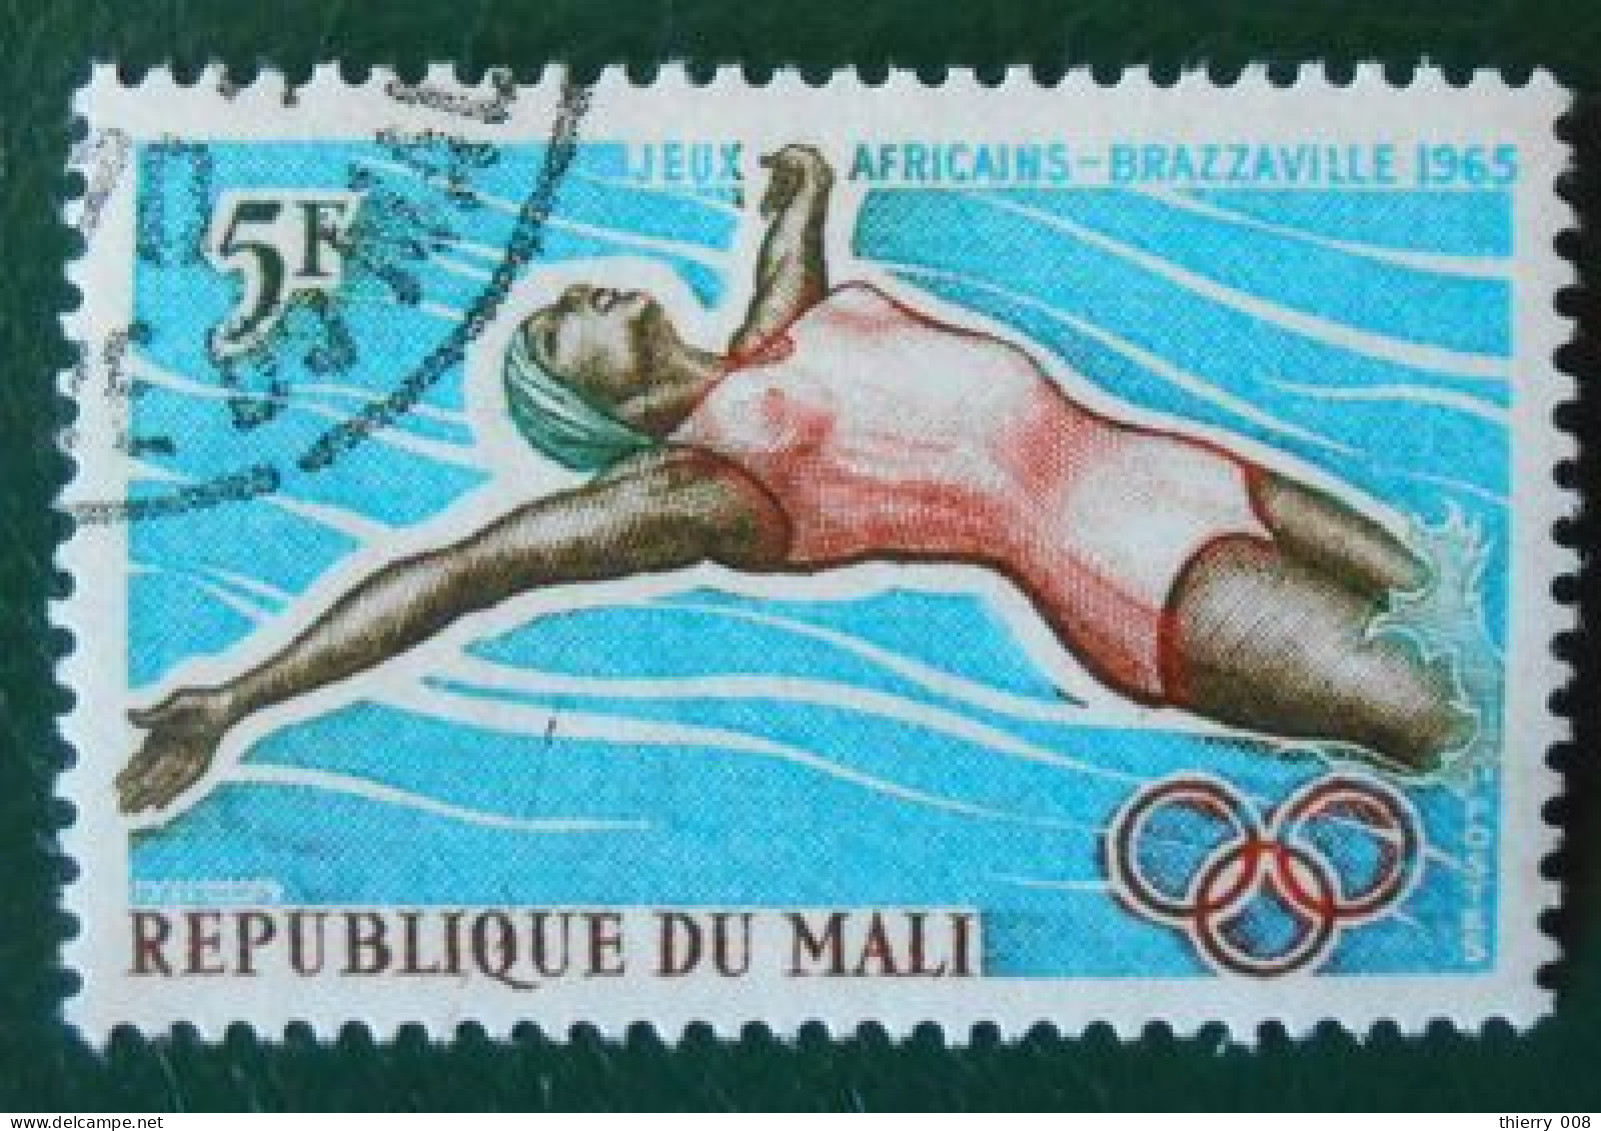 04 République Du Mali Jeux Africains Brazzaville 1965 Natation - Swimming